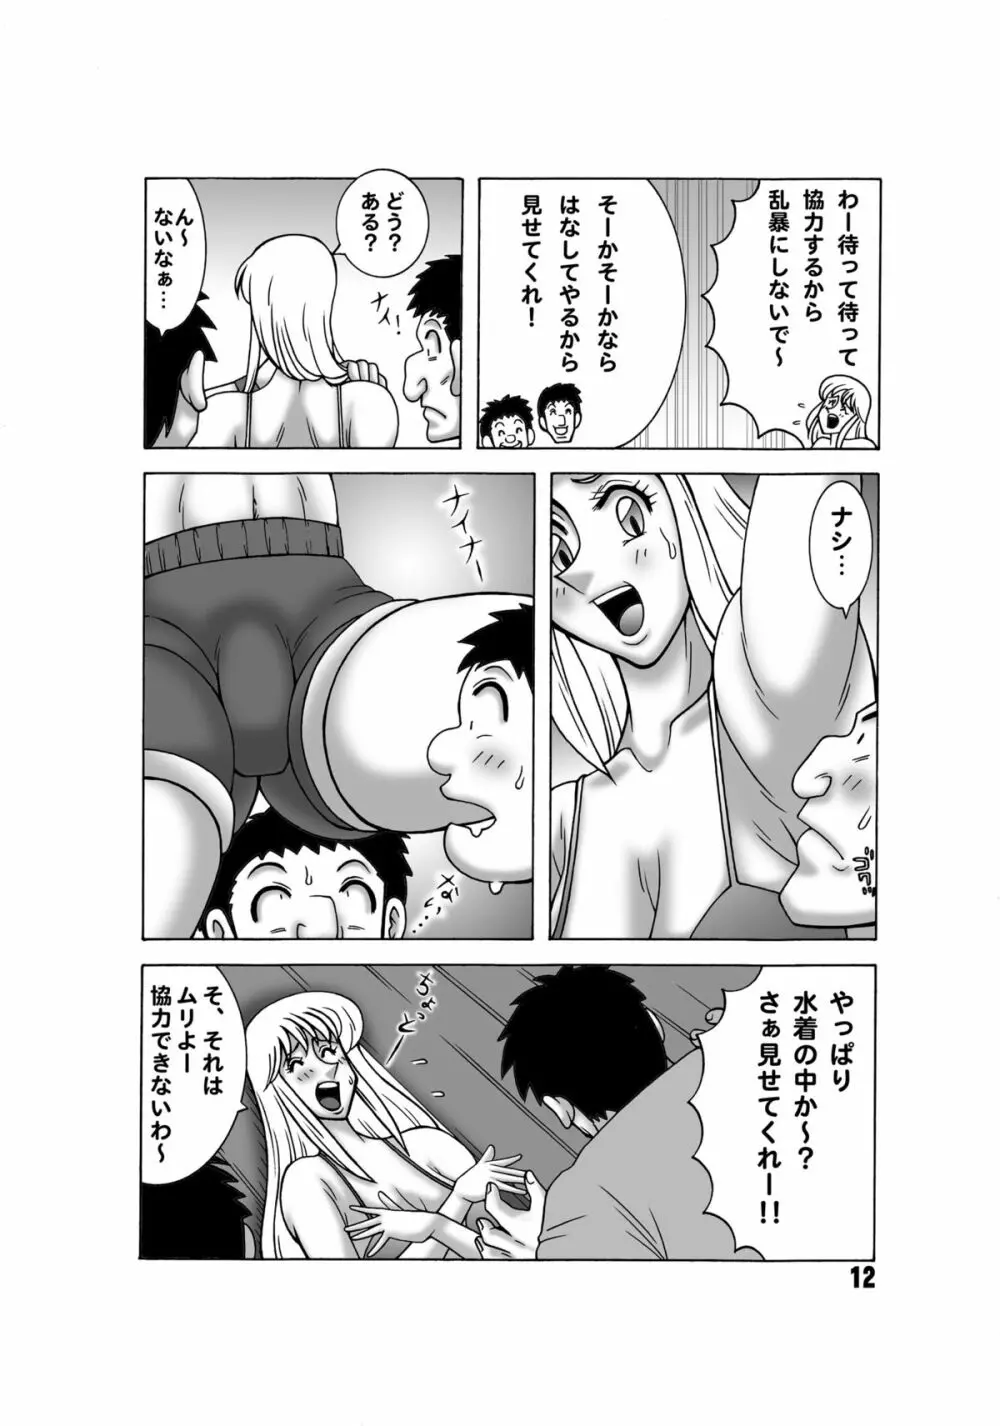 こち亀ダイナマイト 13 - page11